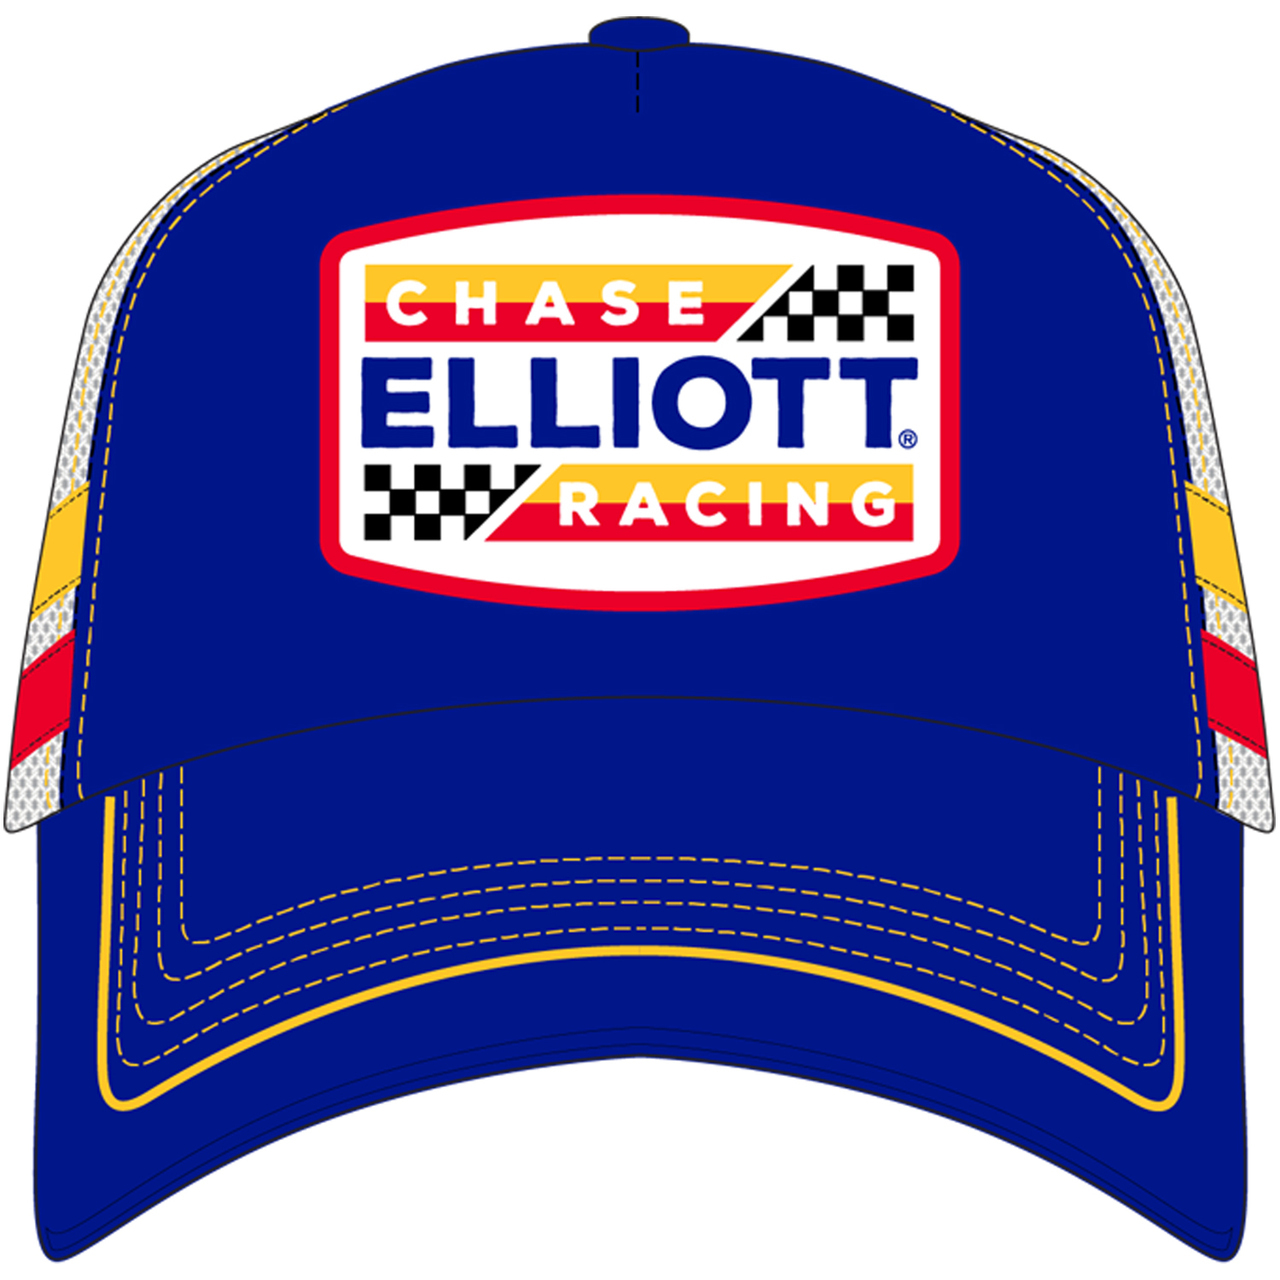 OLD VTG Chase Elliott #9 Racing Trucker "patch throw back" white/blue mesh ball  - $20.00